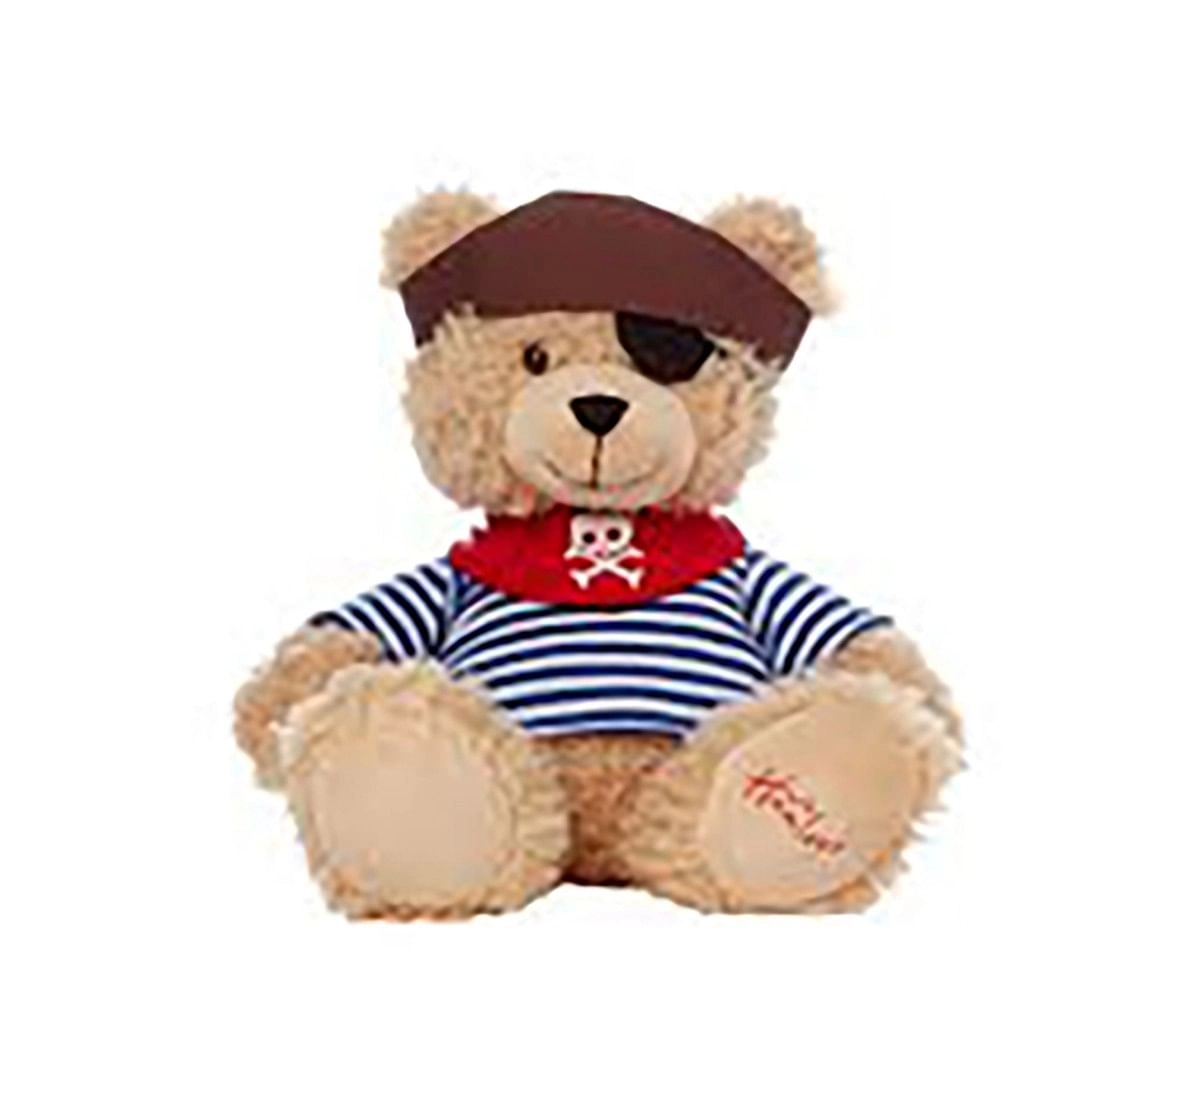 Hamleys Pirate Bear (Brown) Teddy Bears for Kids age 3Y+ - 29 Cm (Brown)